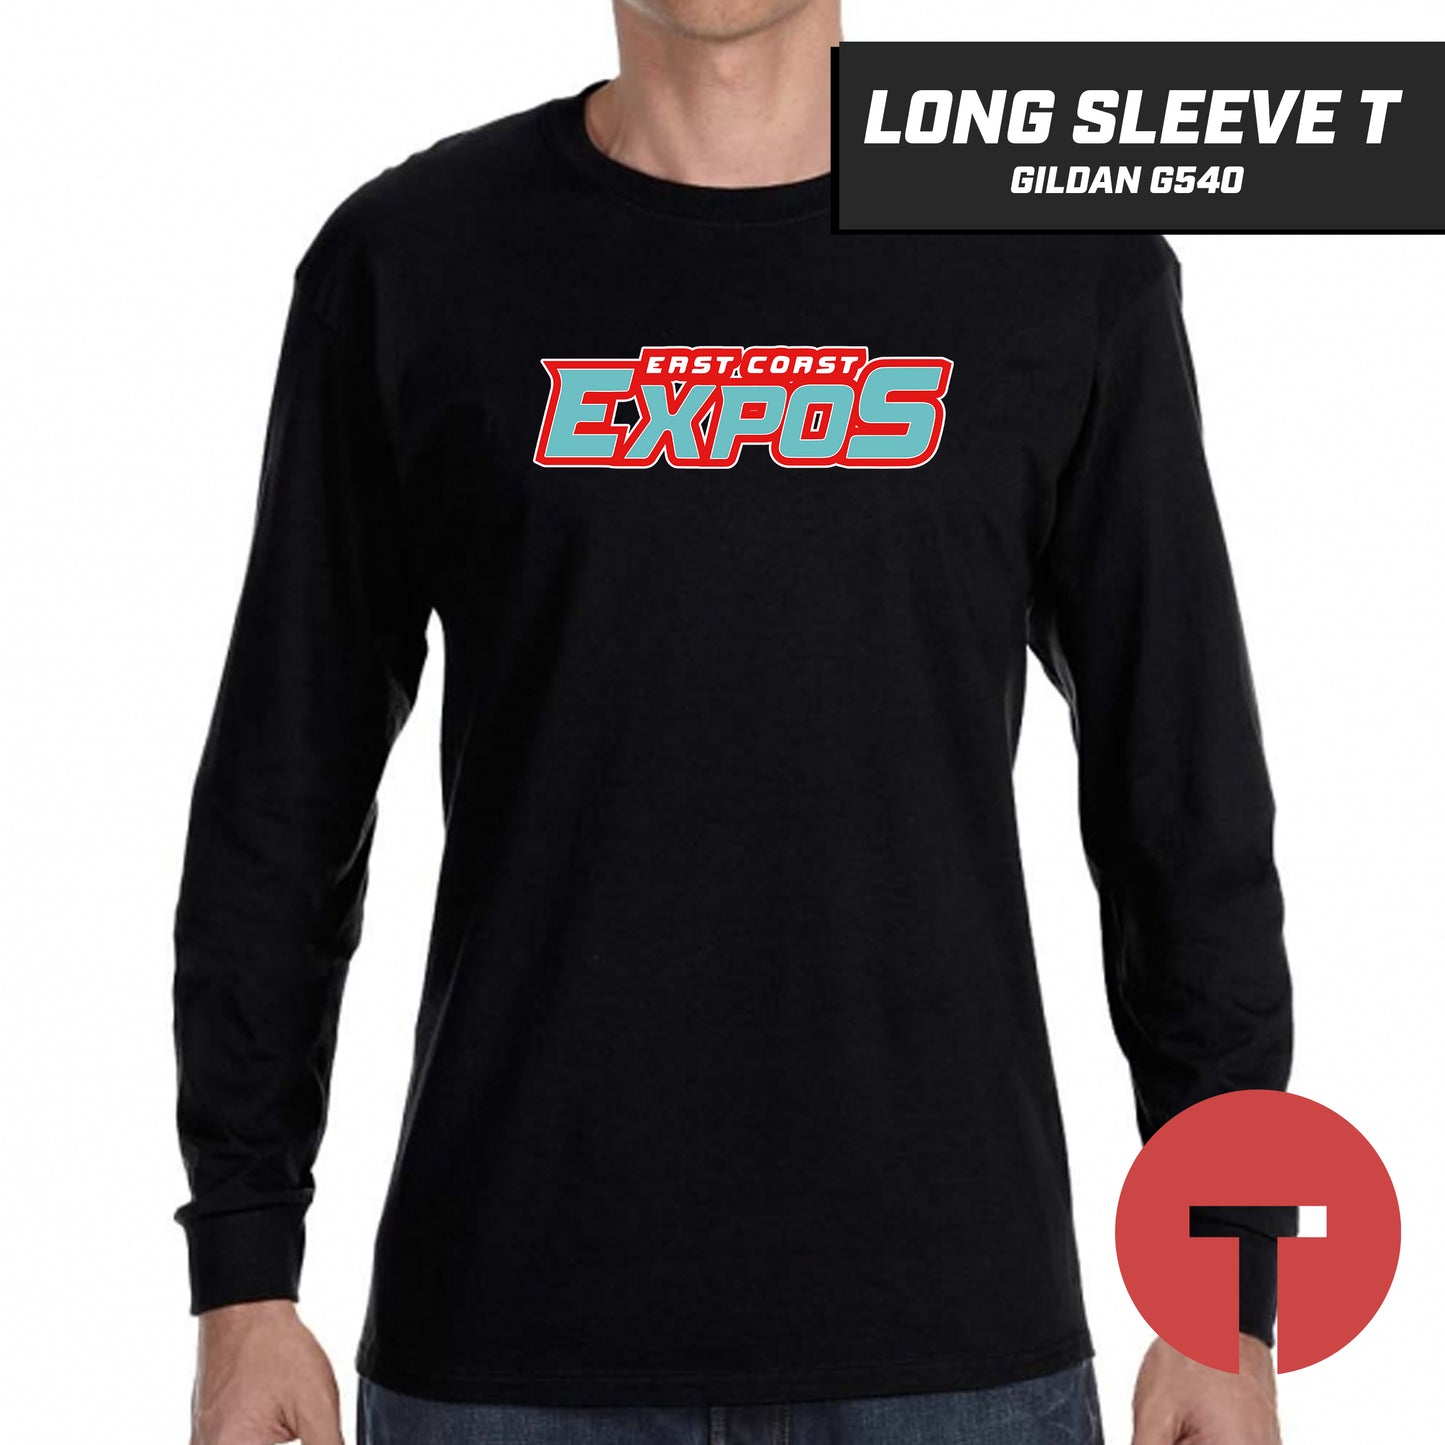 East Coast Expos - Long-Sleeve T-Shirt Gildan G540